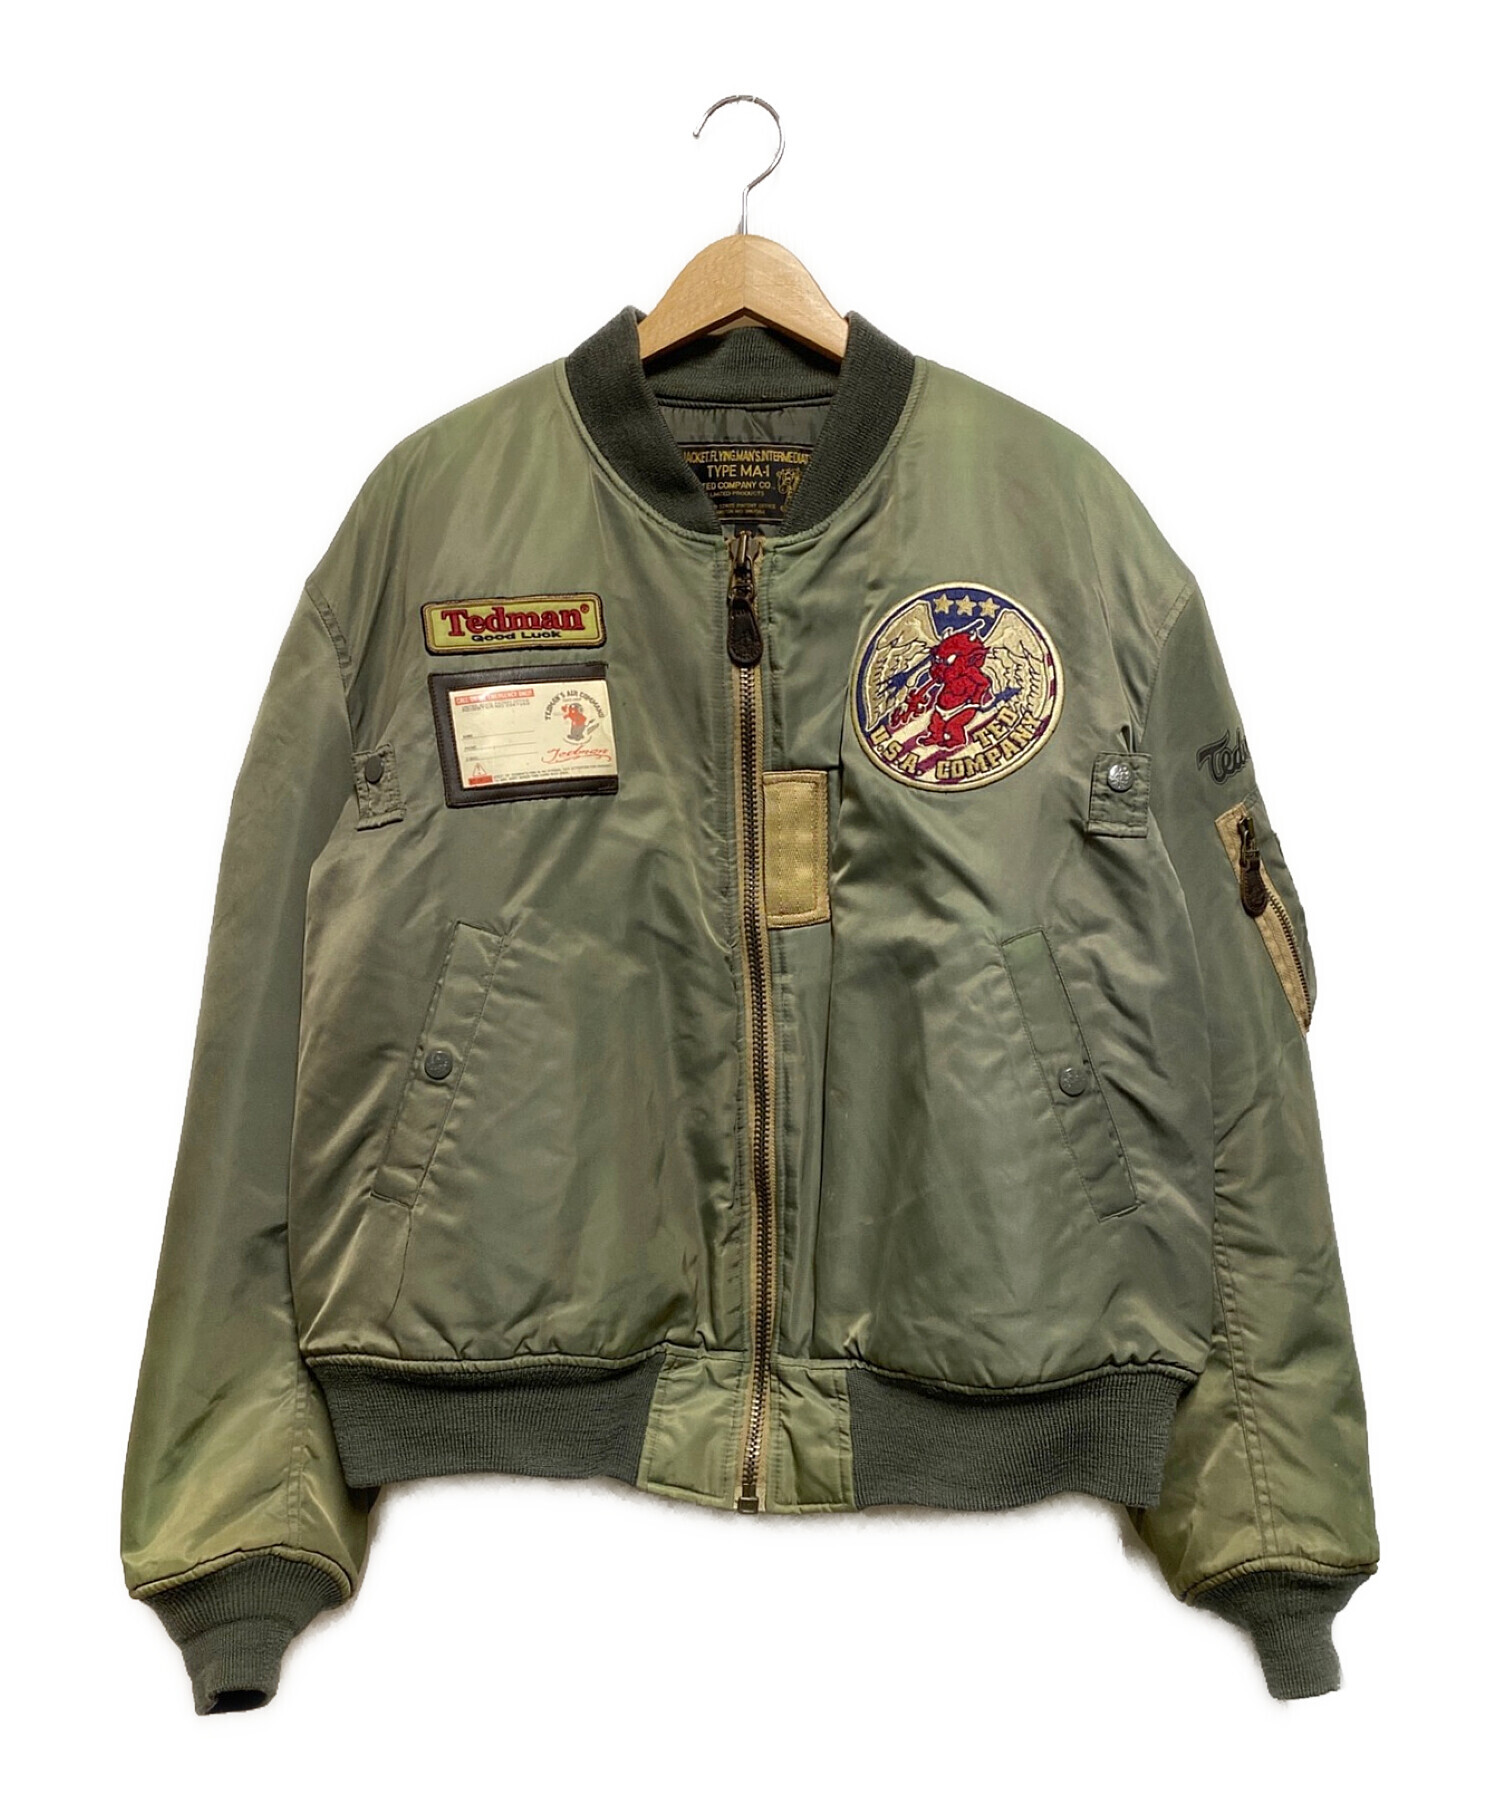 TED COMPANY (テッドカンパニー) MA-1ジャケット グリーン サイズ:42